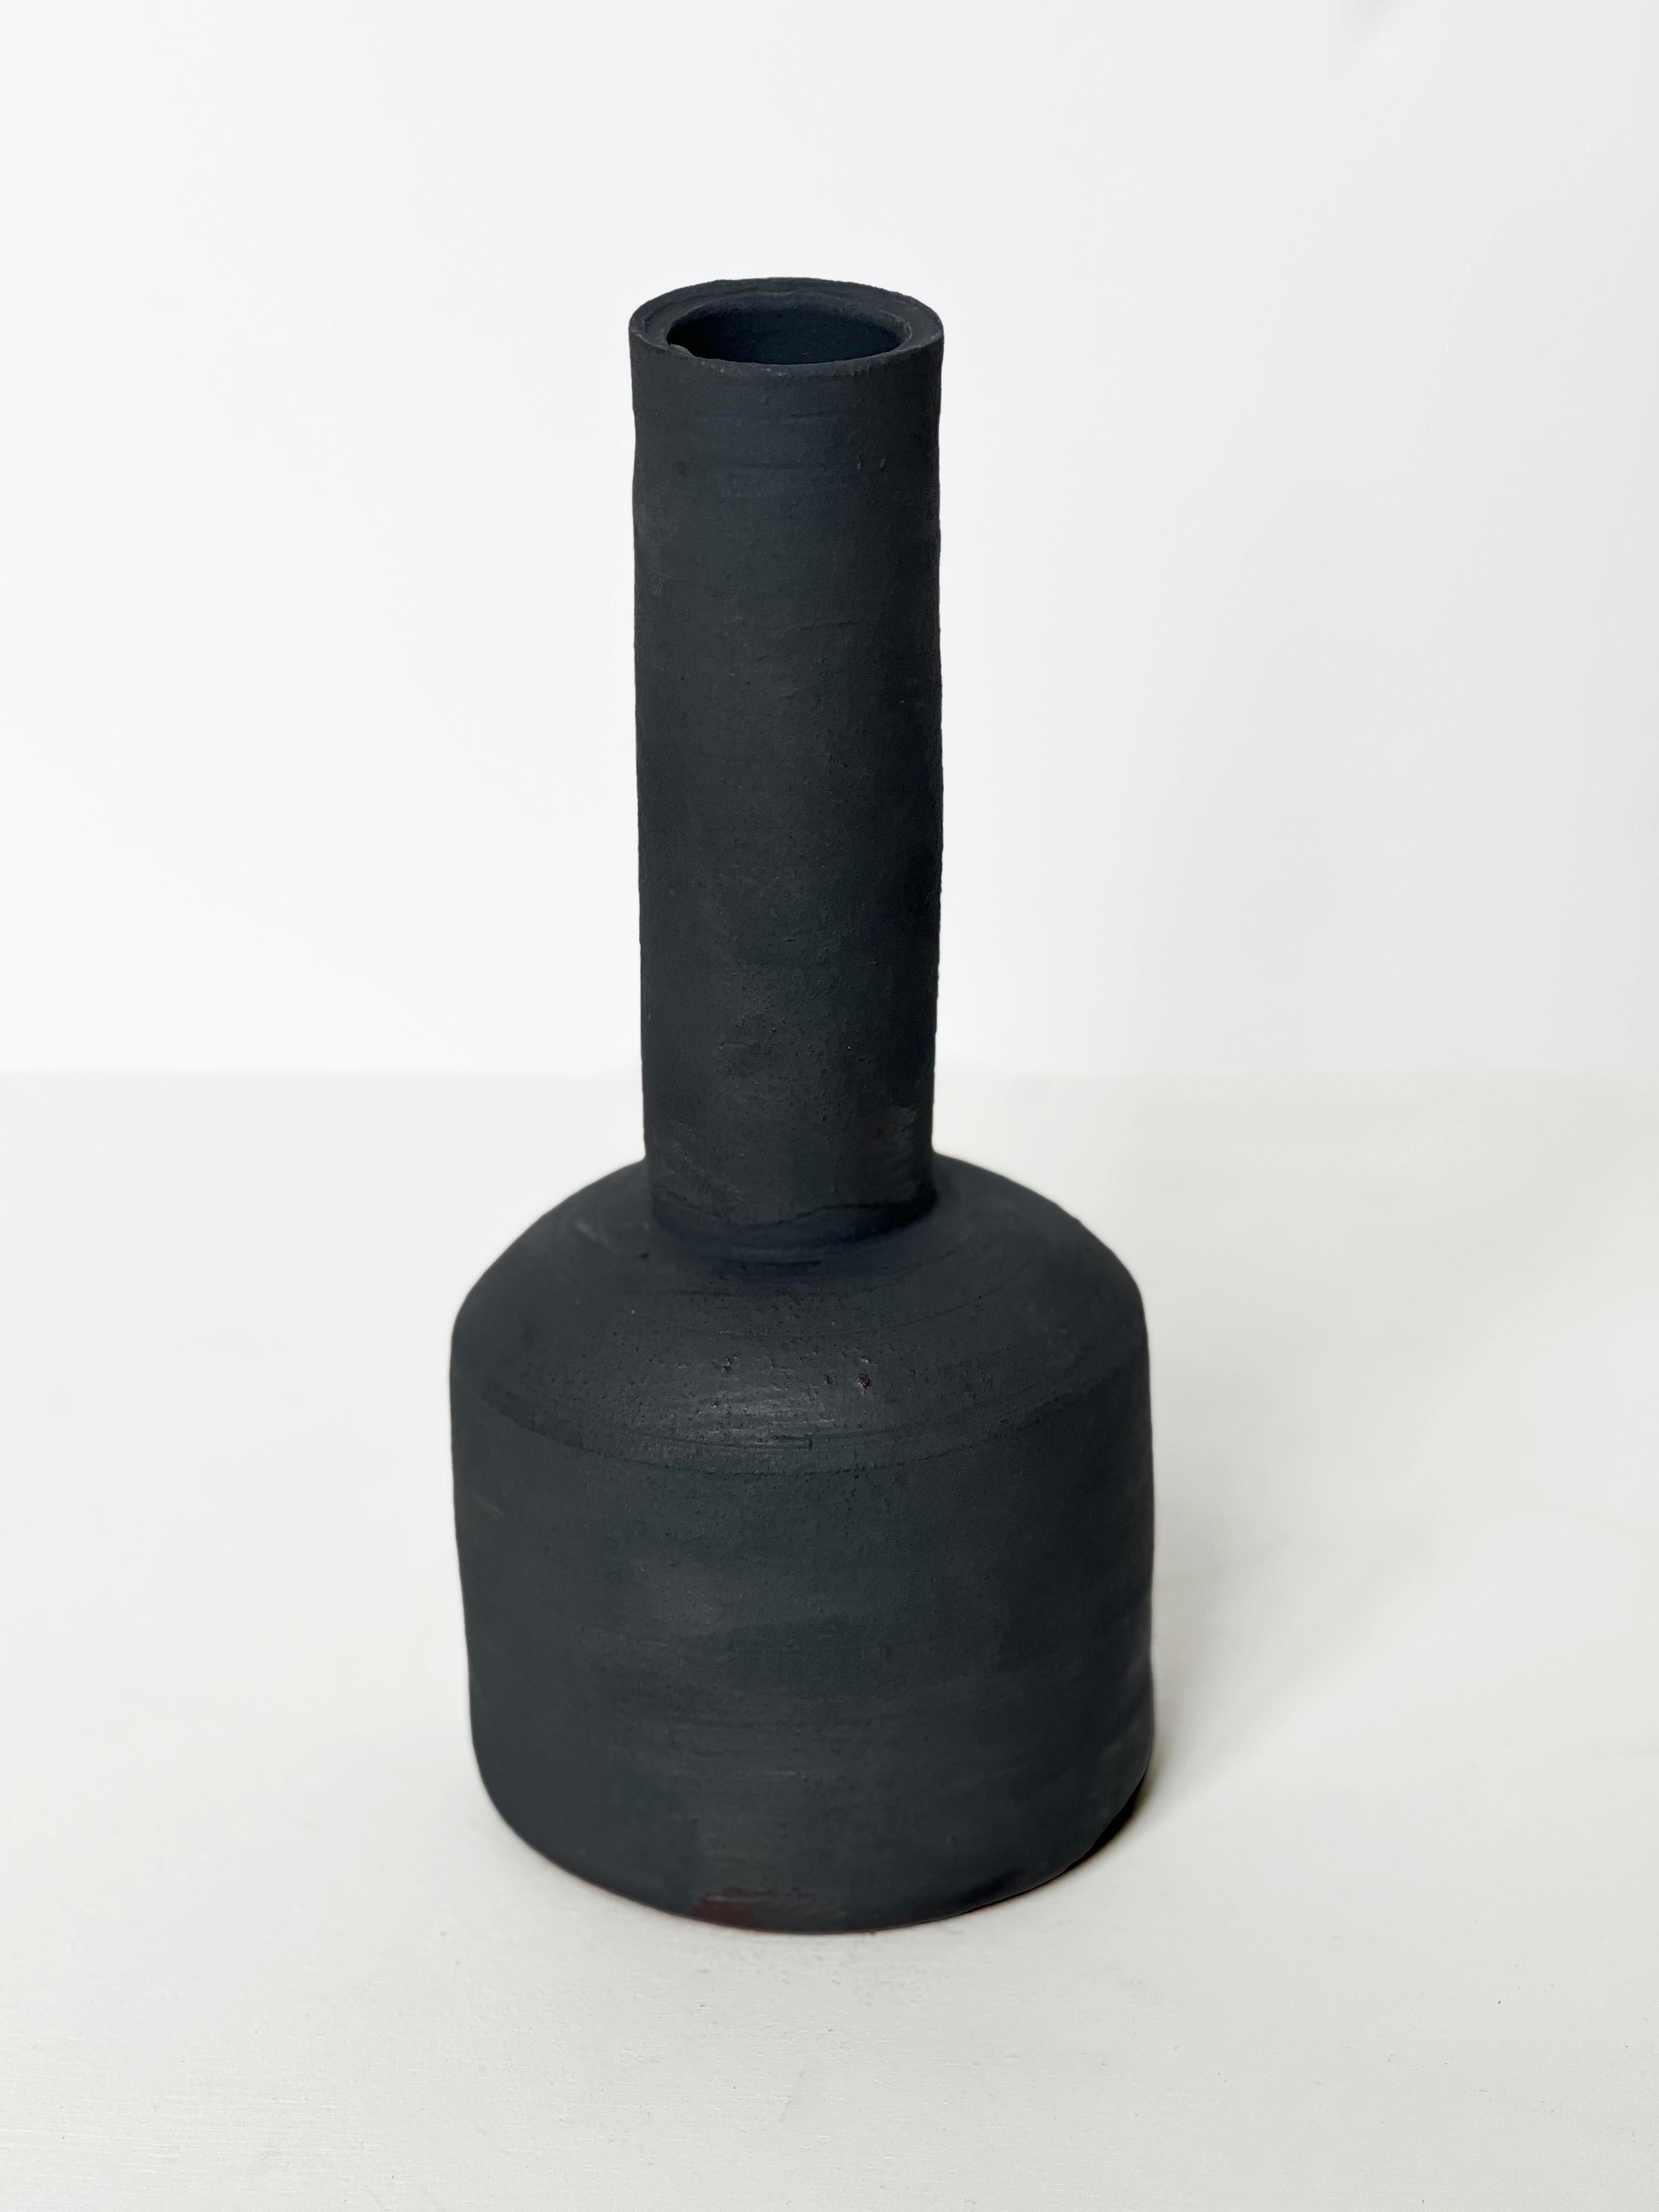 Handgefertigtes und sorgfältig verarbeitetes Stück aus Steingut in dunkelgrau/schwarzer Farbe.  Diese Vase hat einen breiteren runden Boden und einen langen Hals.  Mit ihrer matten Oberfläche und der weichen Haptik eignet sich diese Vase perfekt zur